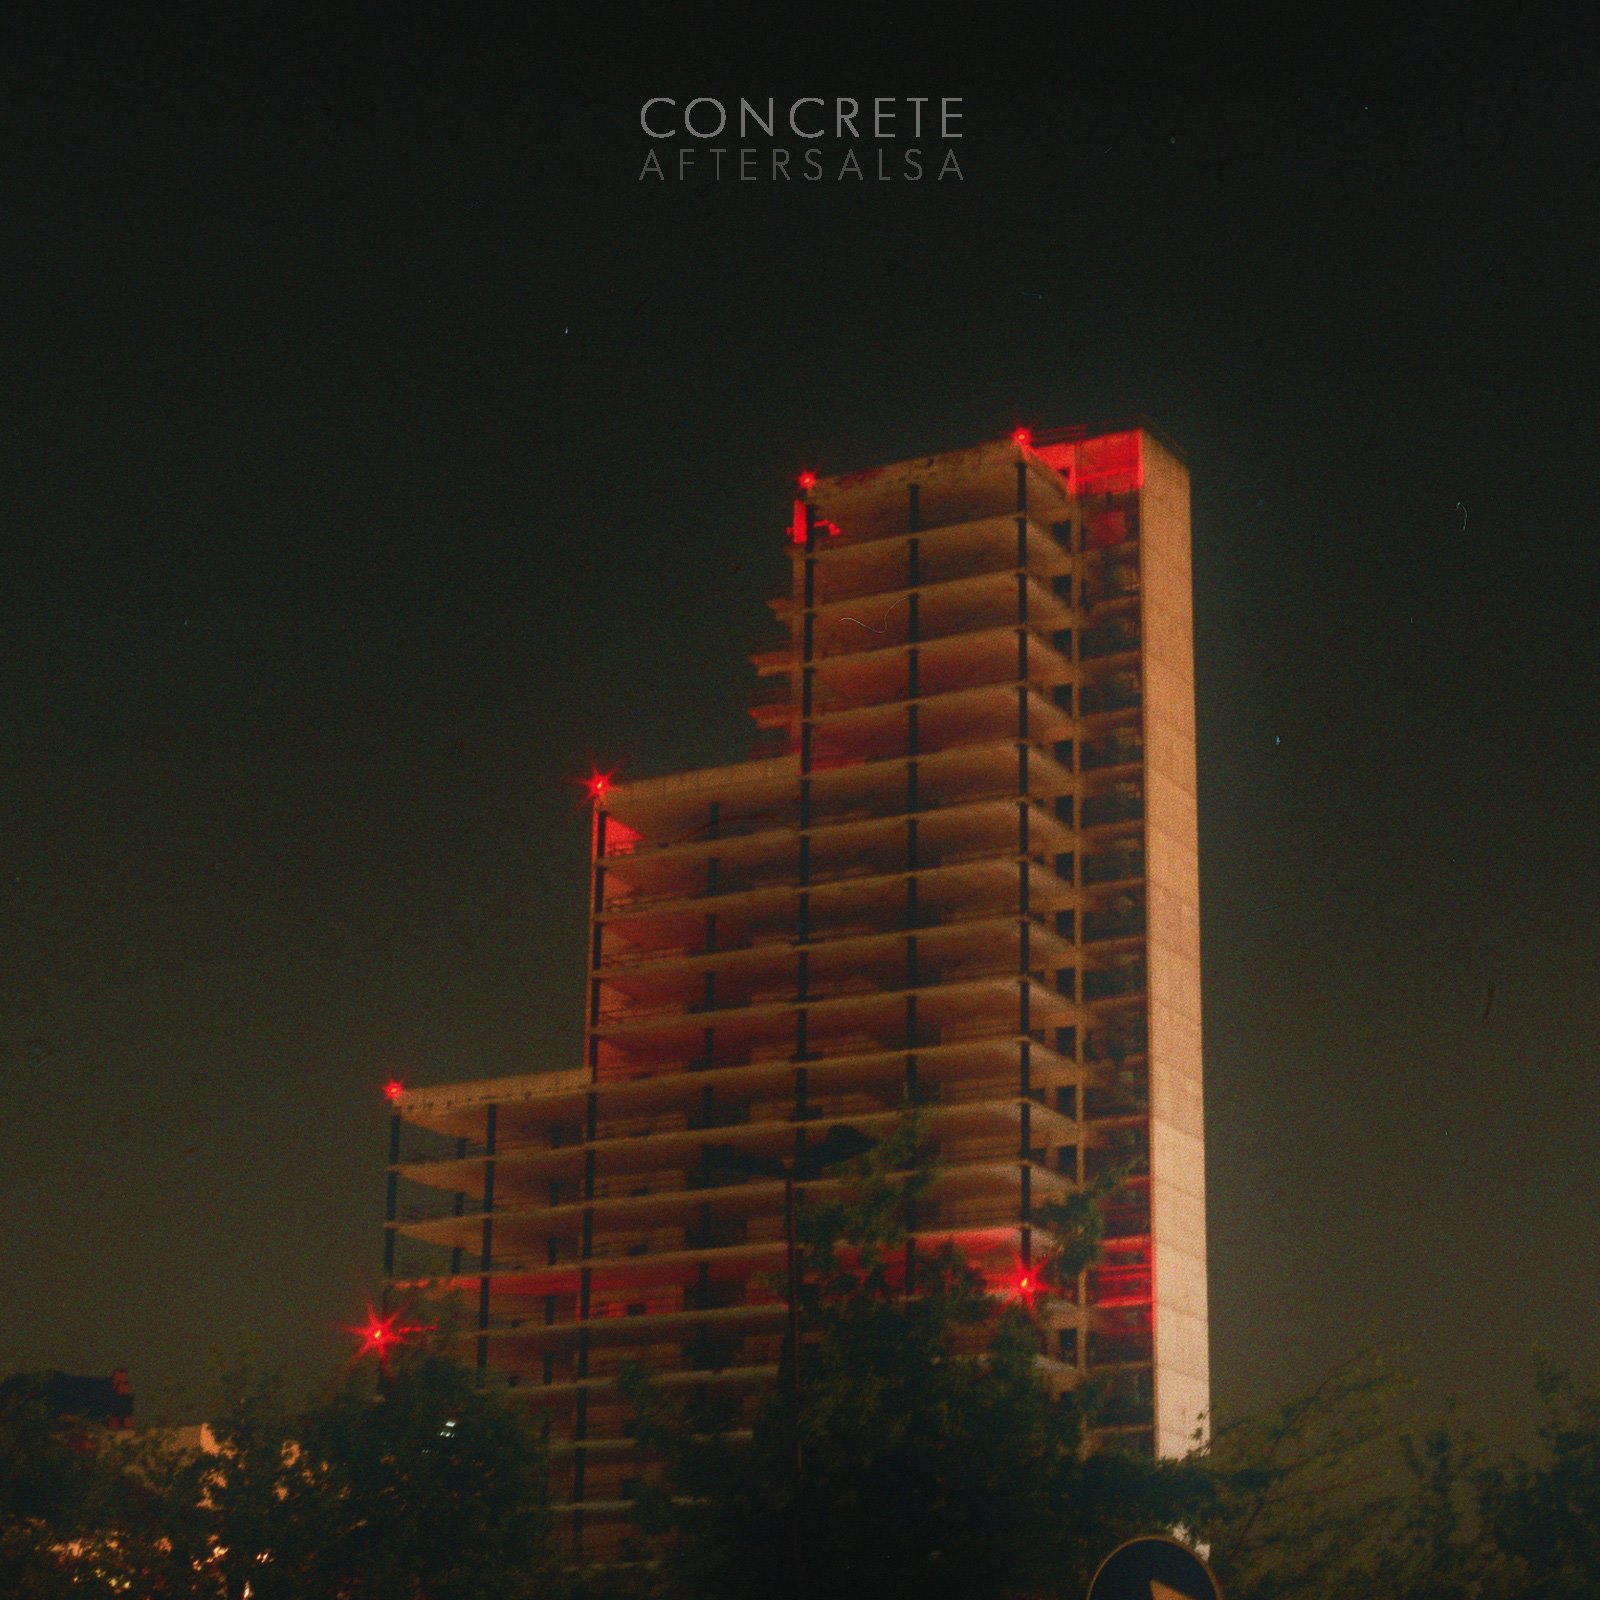 La cover notturna di Concrete, un disco notturno